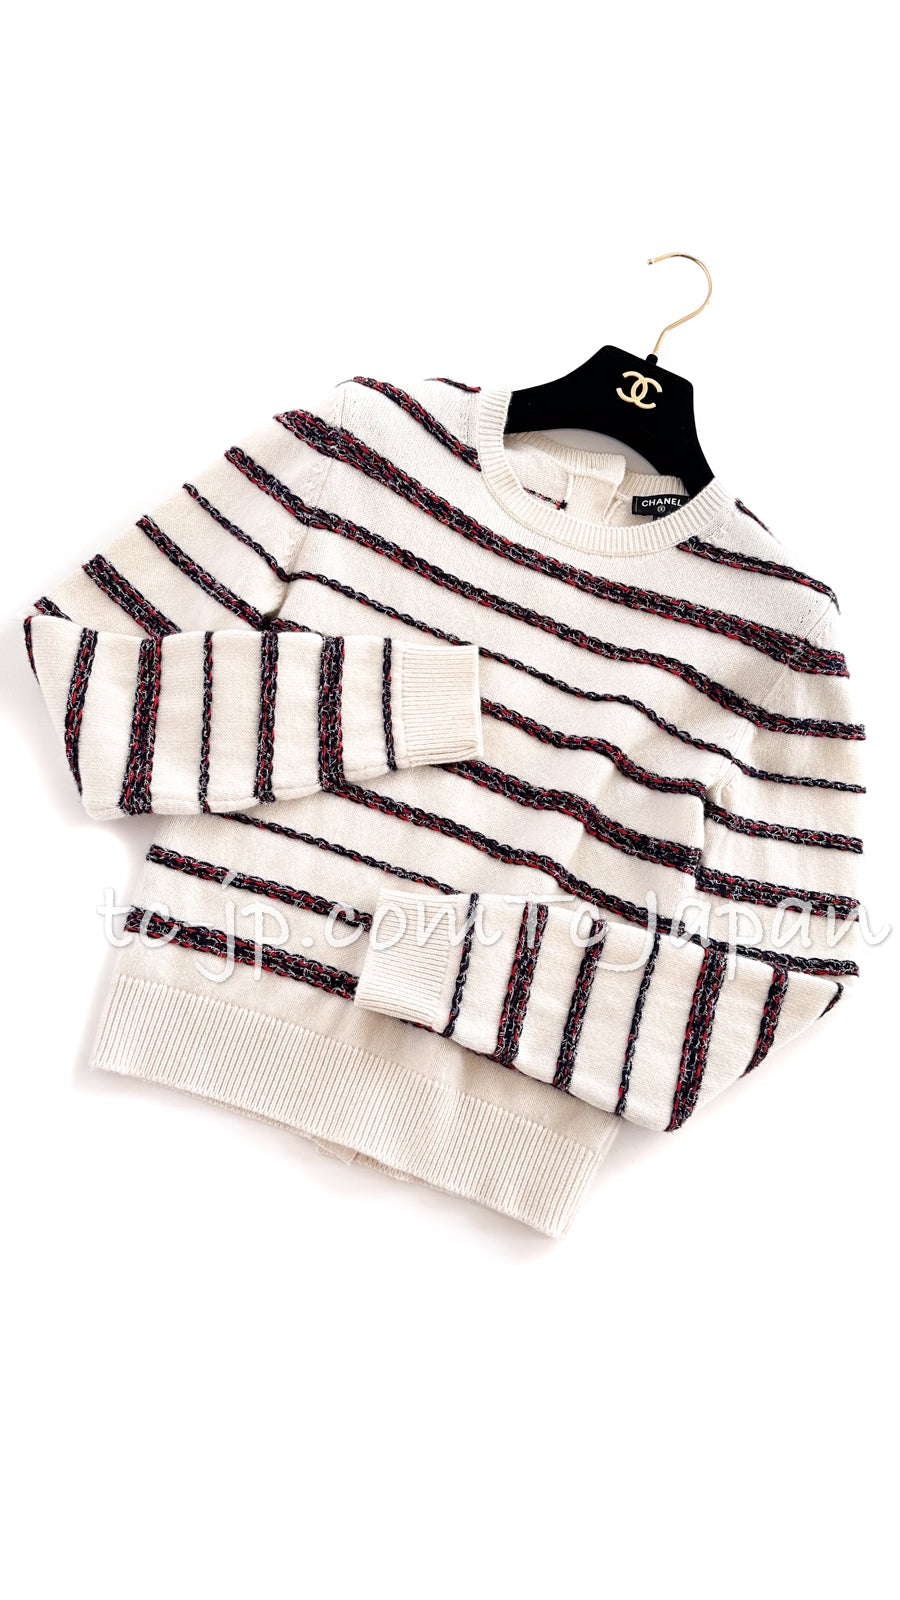 シャネル セーター トップス CHANEL Sweater Tops【正規品・専門店